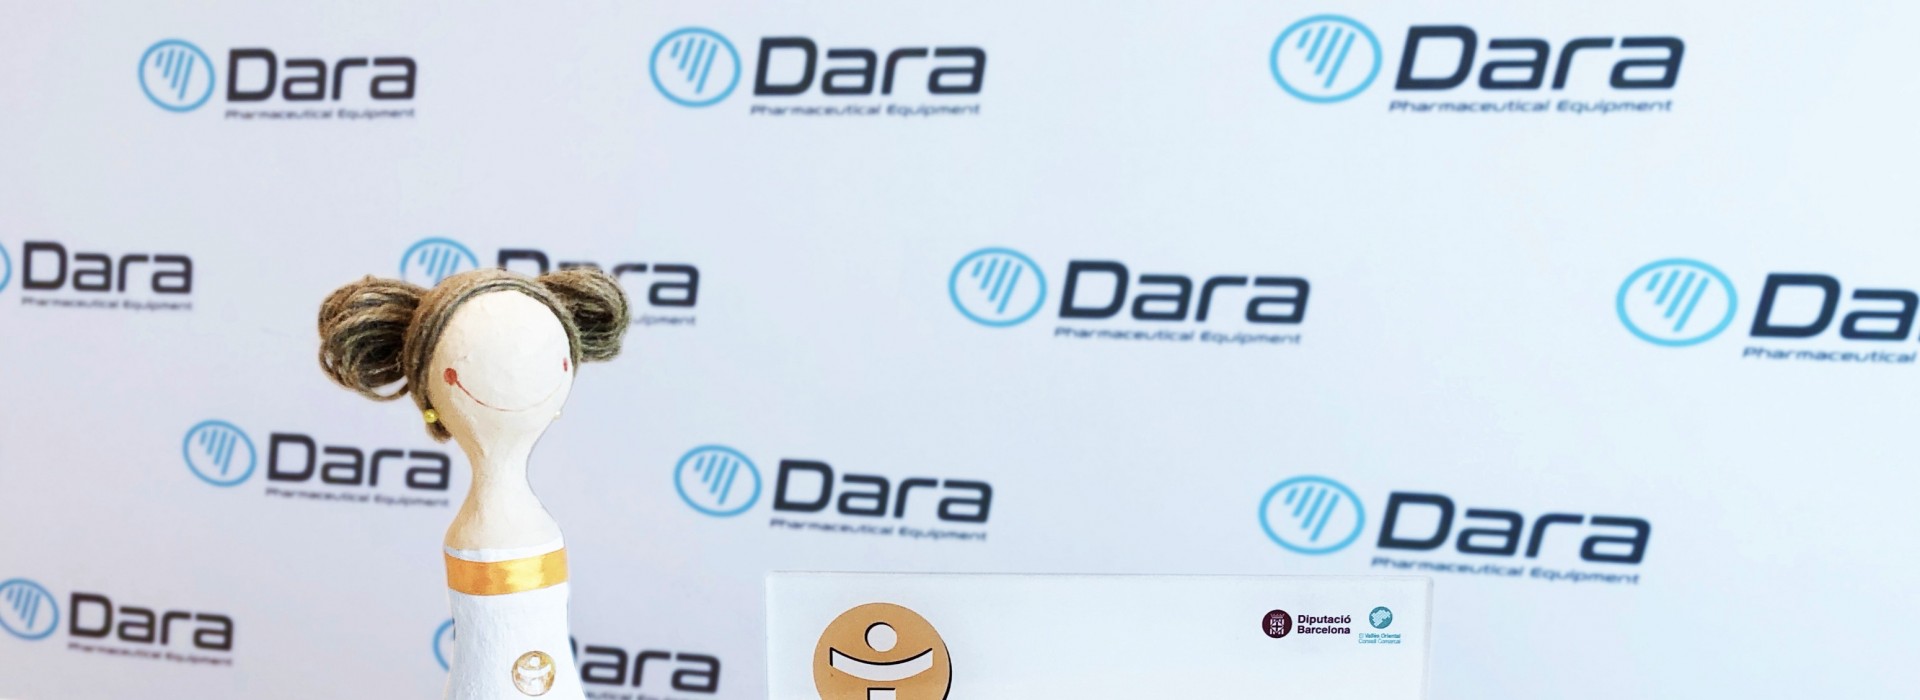 DARA Pharma fue galardonada con “La dona d’aigua”.